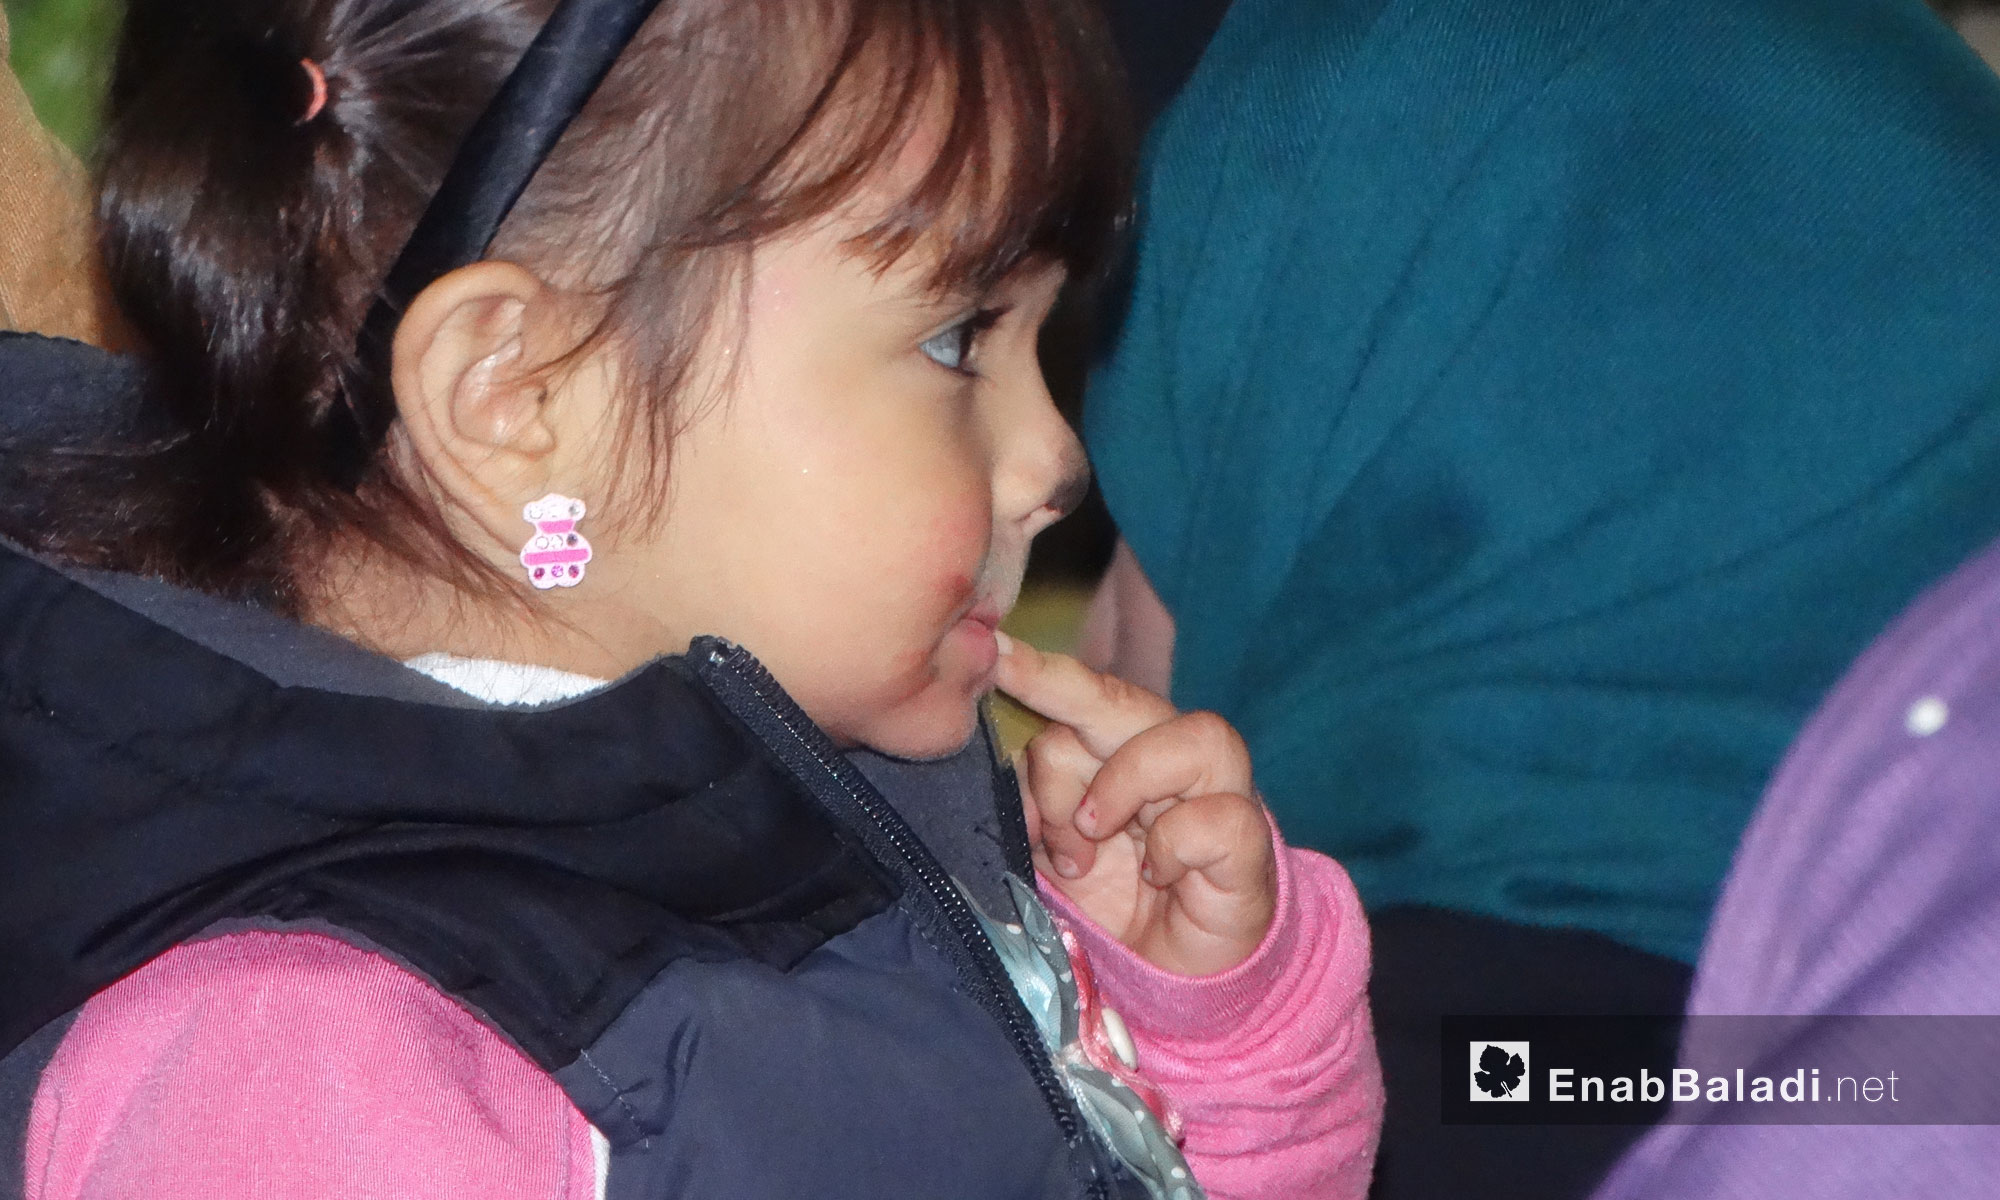 الحفل الترفيهي لنادي بسمة نور في حي الوعر بحمص - السبت 12 تشرين الثاني (عنب بلدي)